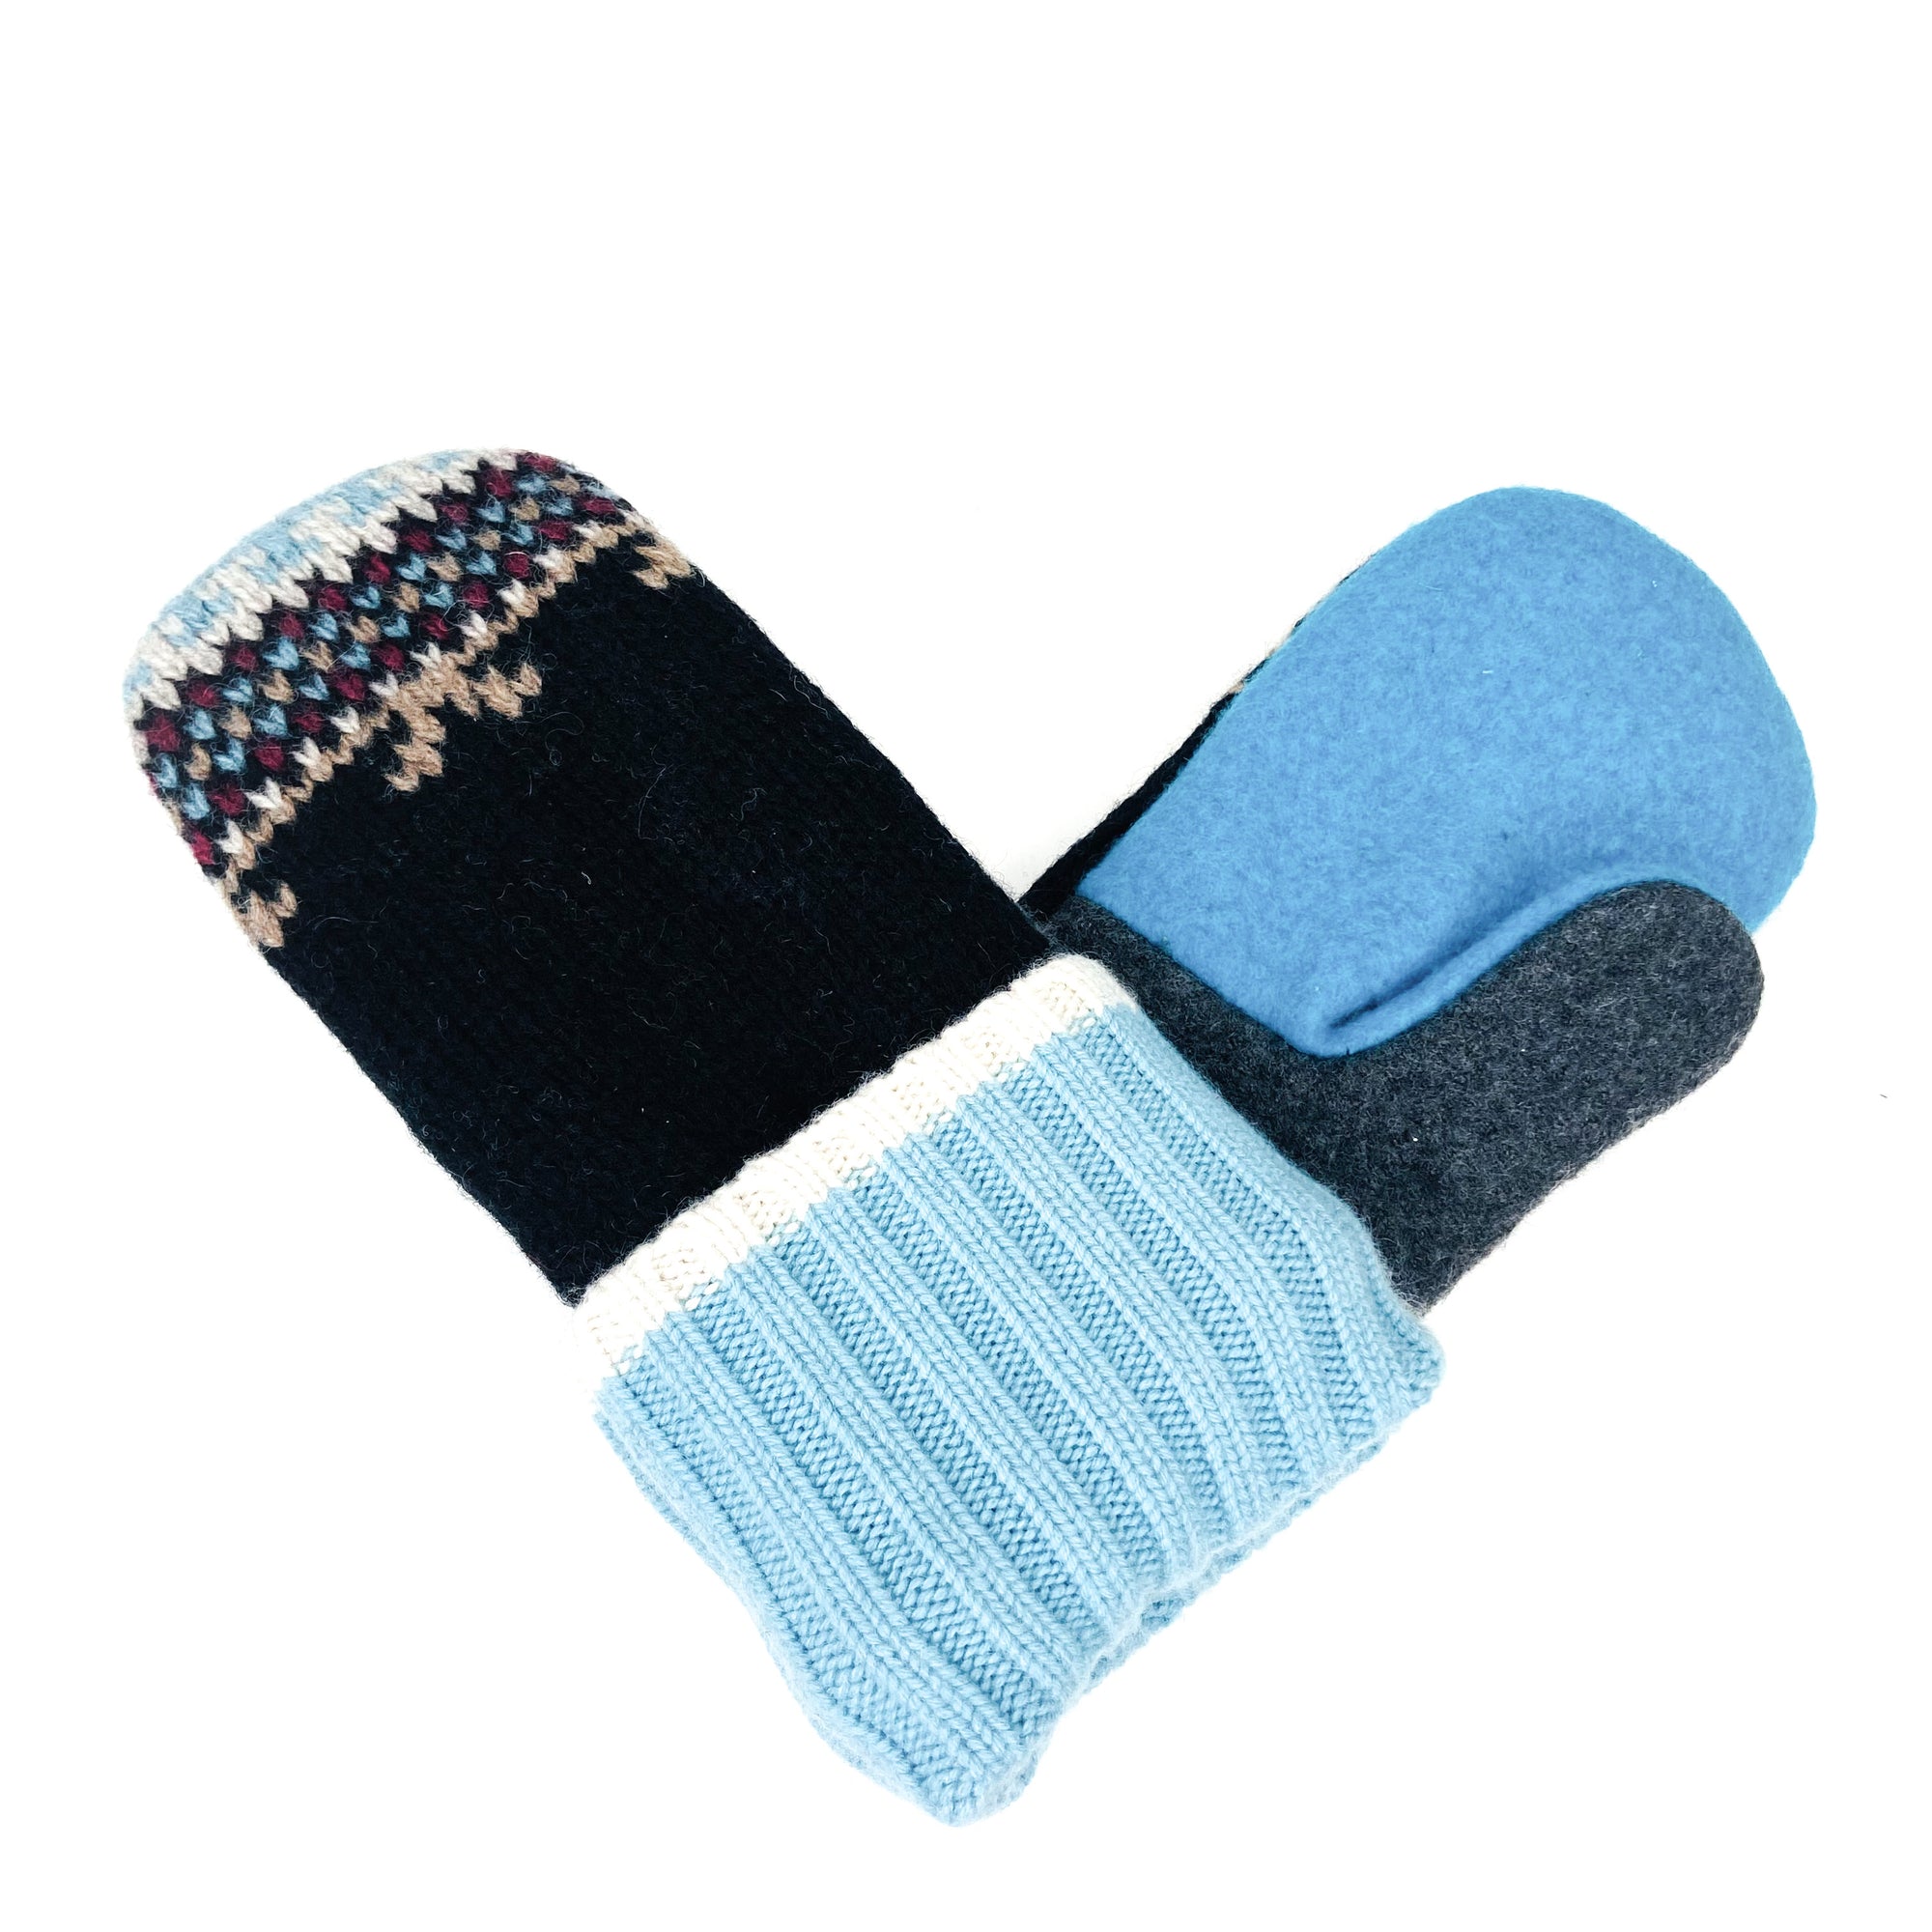 Bernie Sander's mittens, sweater mittens, warm mittens, womens mittens